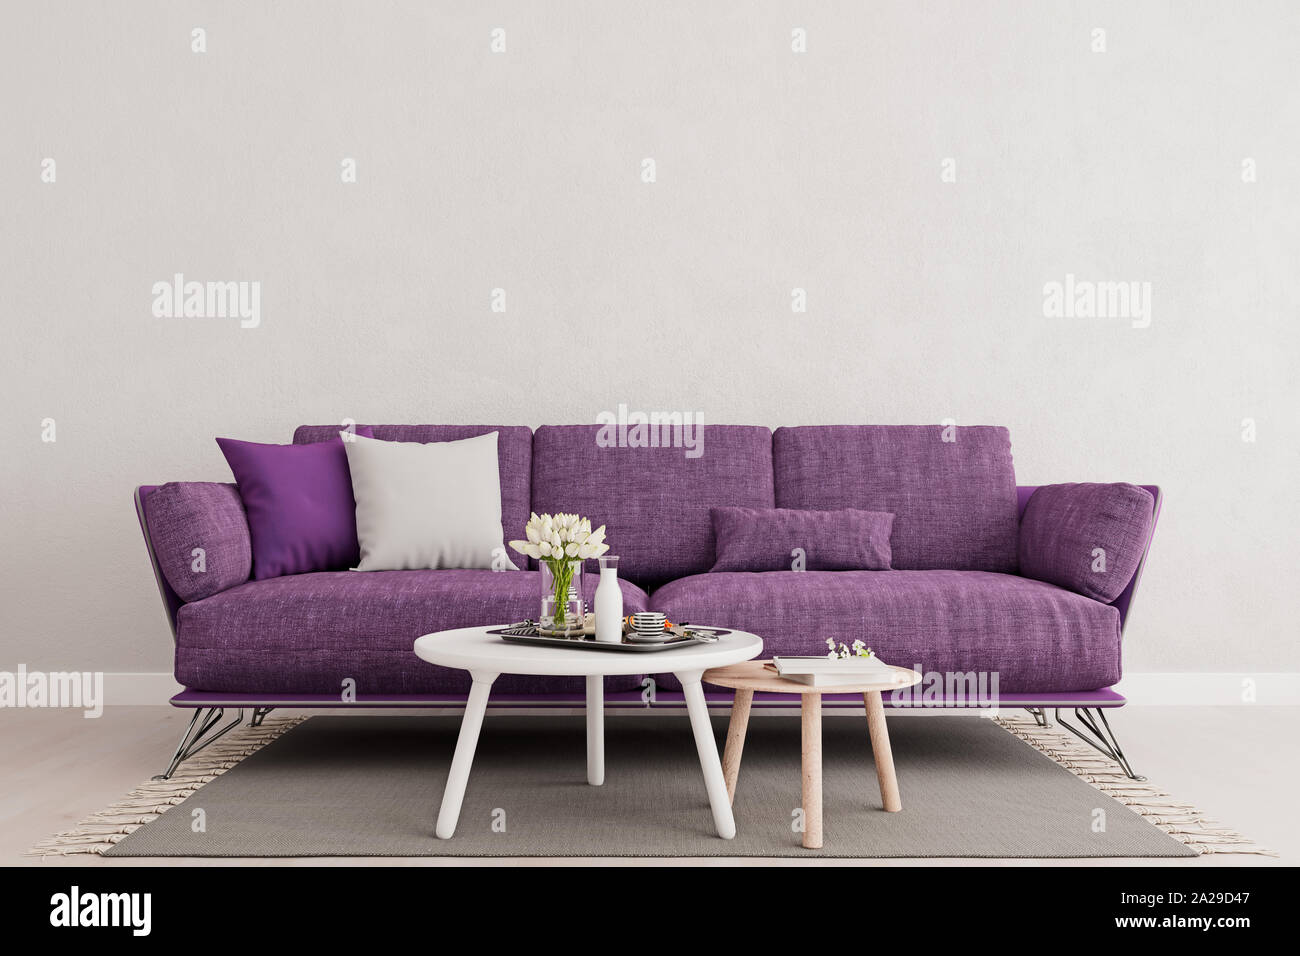 Soggiorno parete interna mock up di porpora viola divano, parete bianca e vuota con spazio libero sopra sulla parte superiore, 3D rendering 3D illustrazione Foto Stock